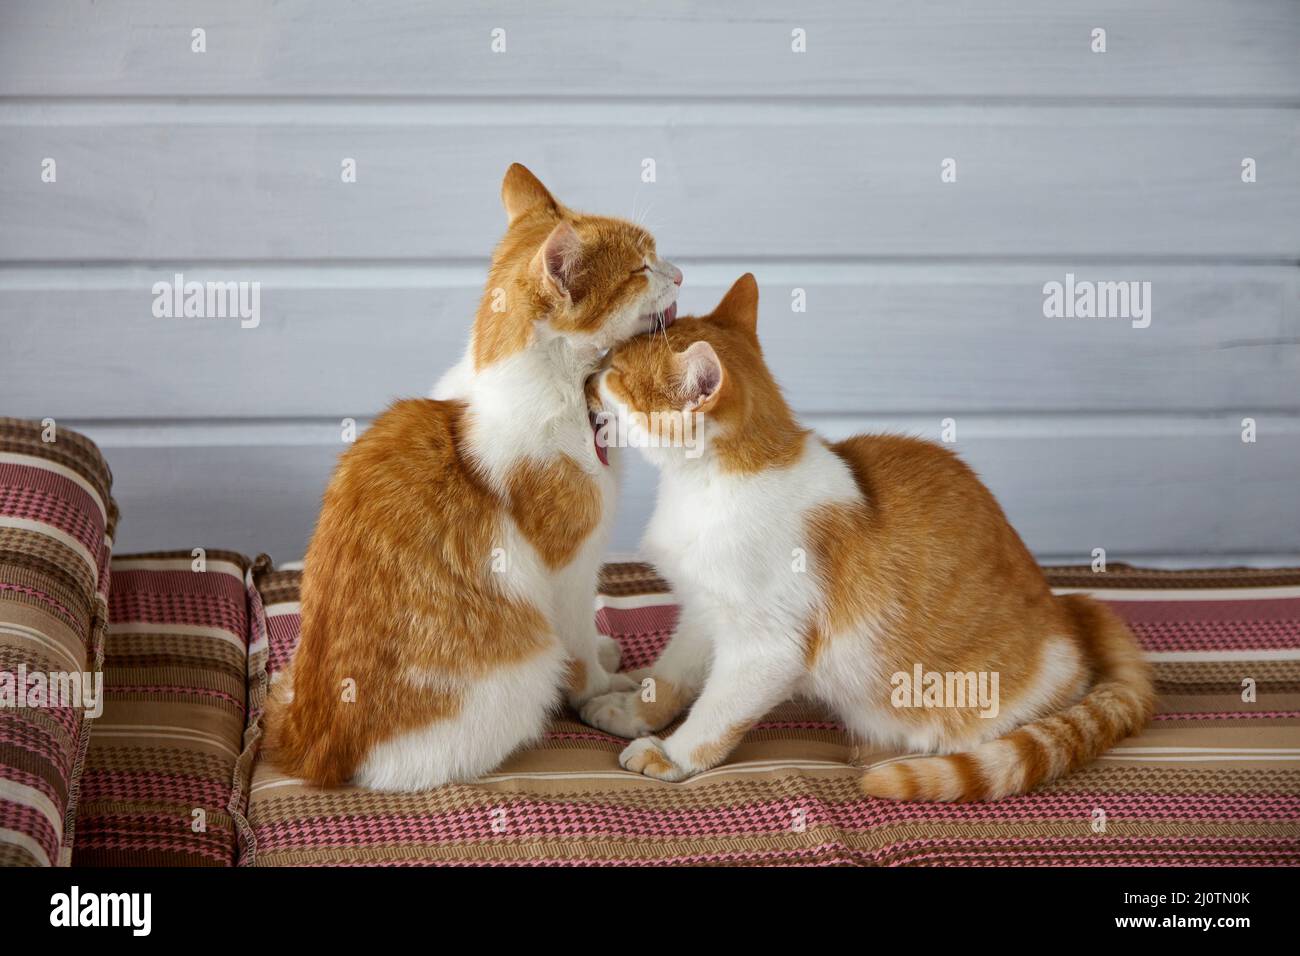 Deux chatons rouges se léchent les uns les autres sur les coussins rayés du canapé. Relation romantique et amicale Banque D'Images